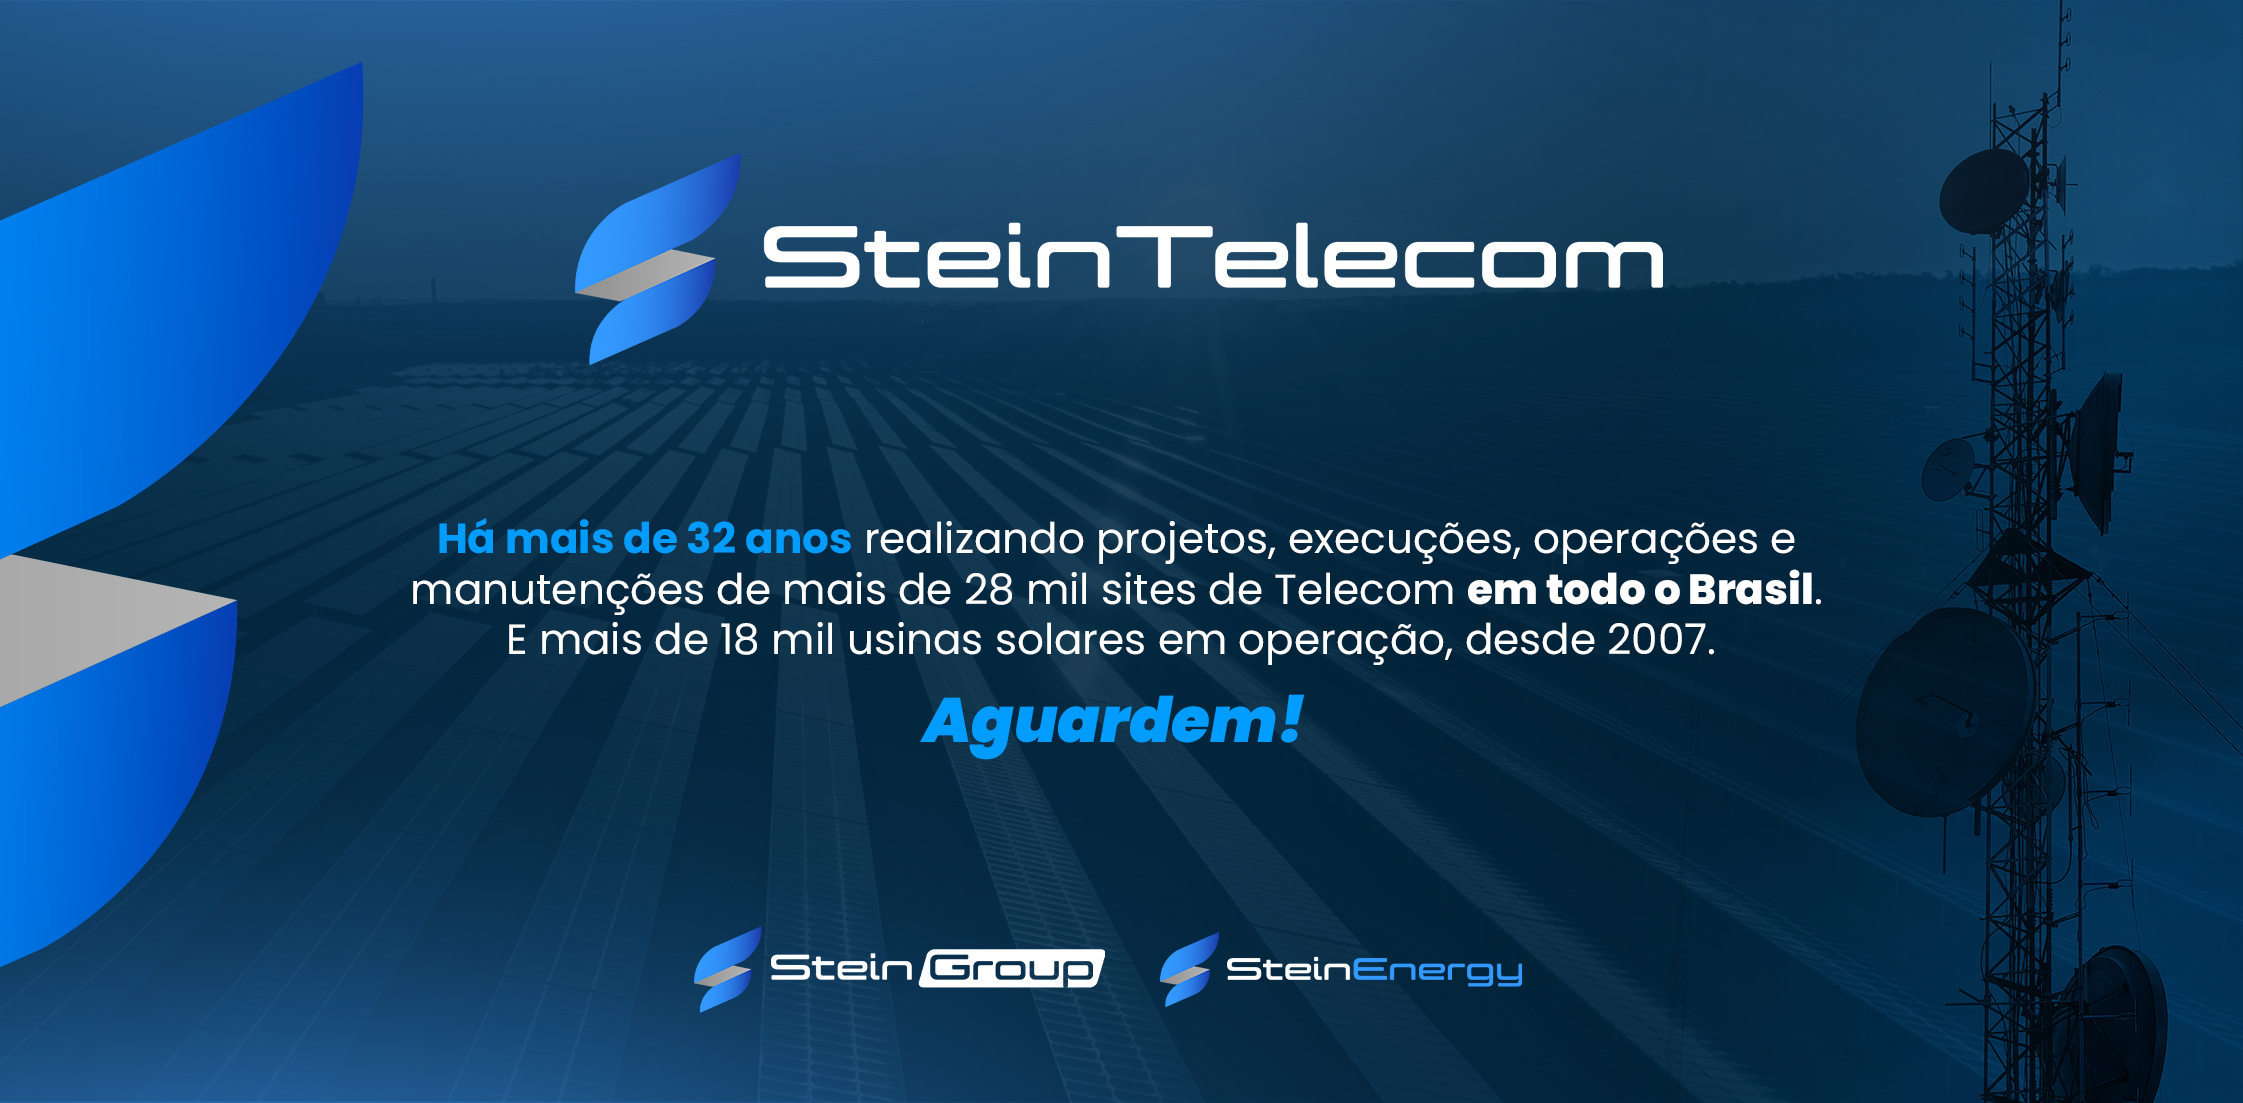 SteinTelecom